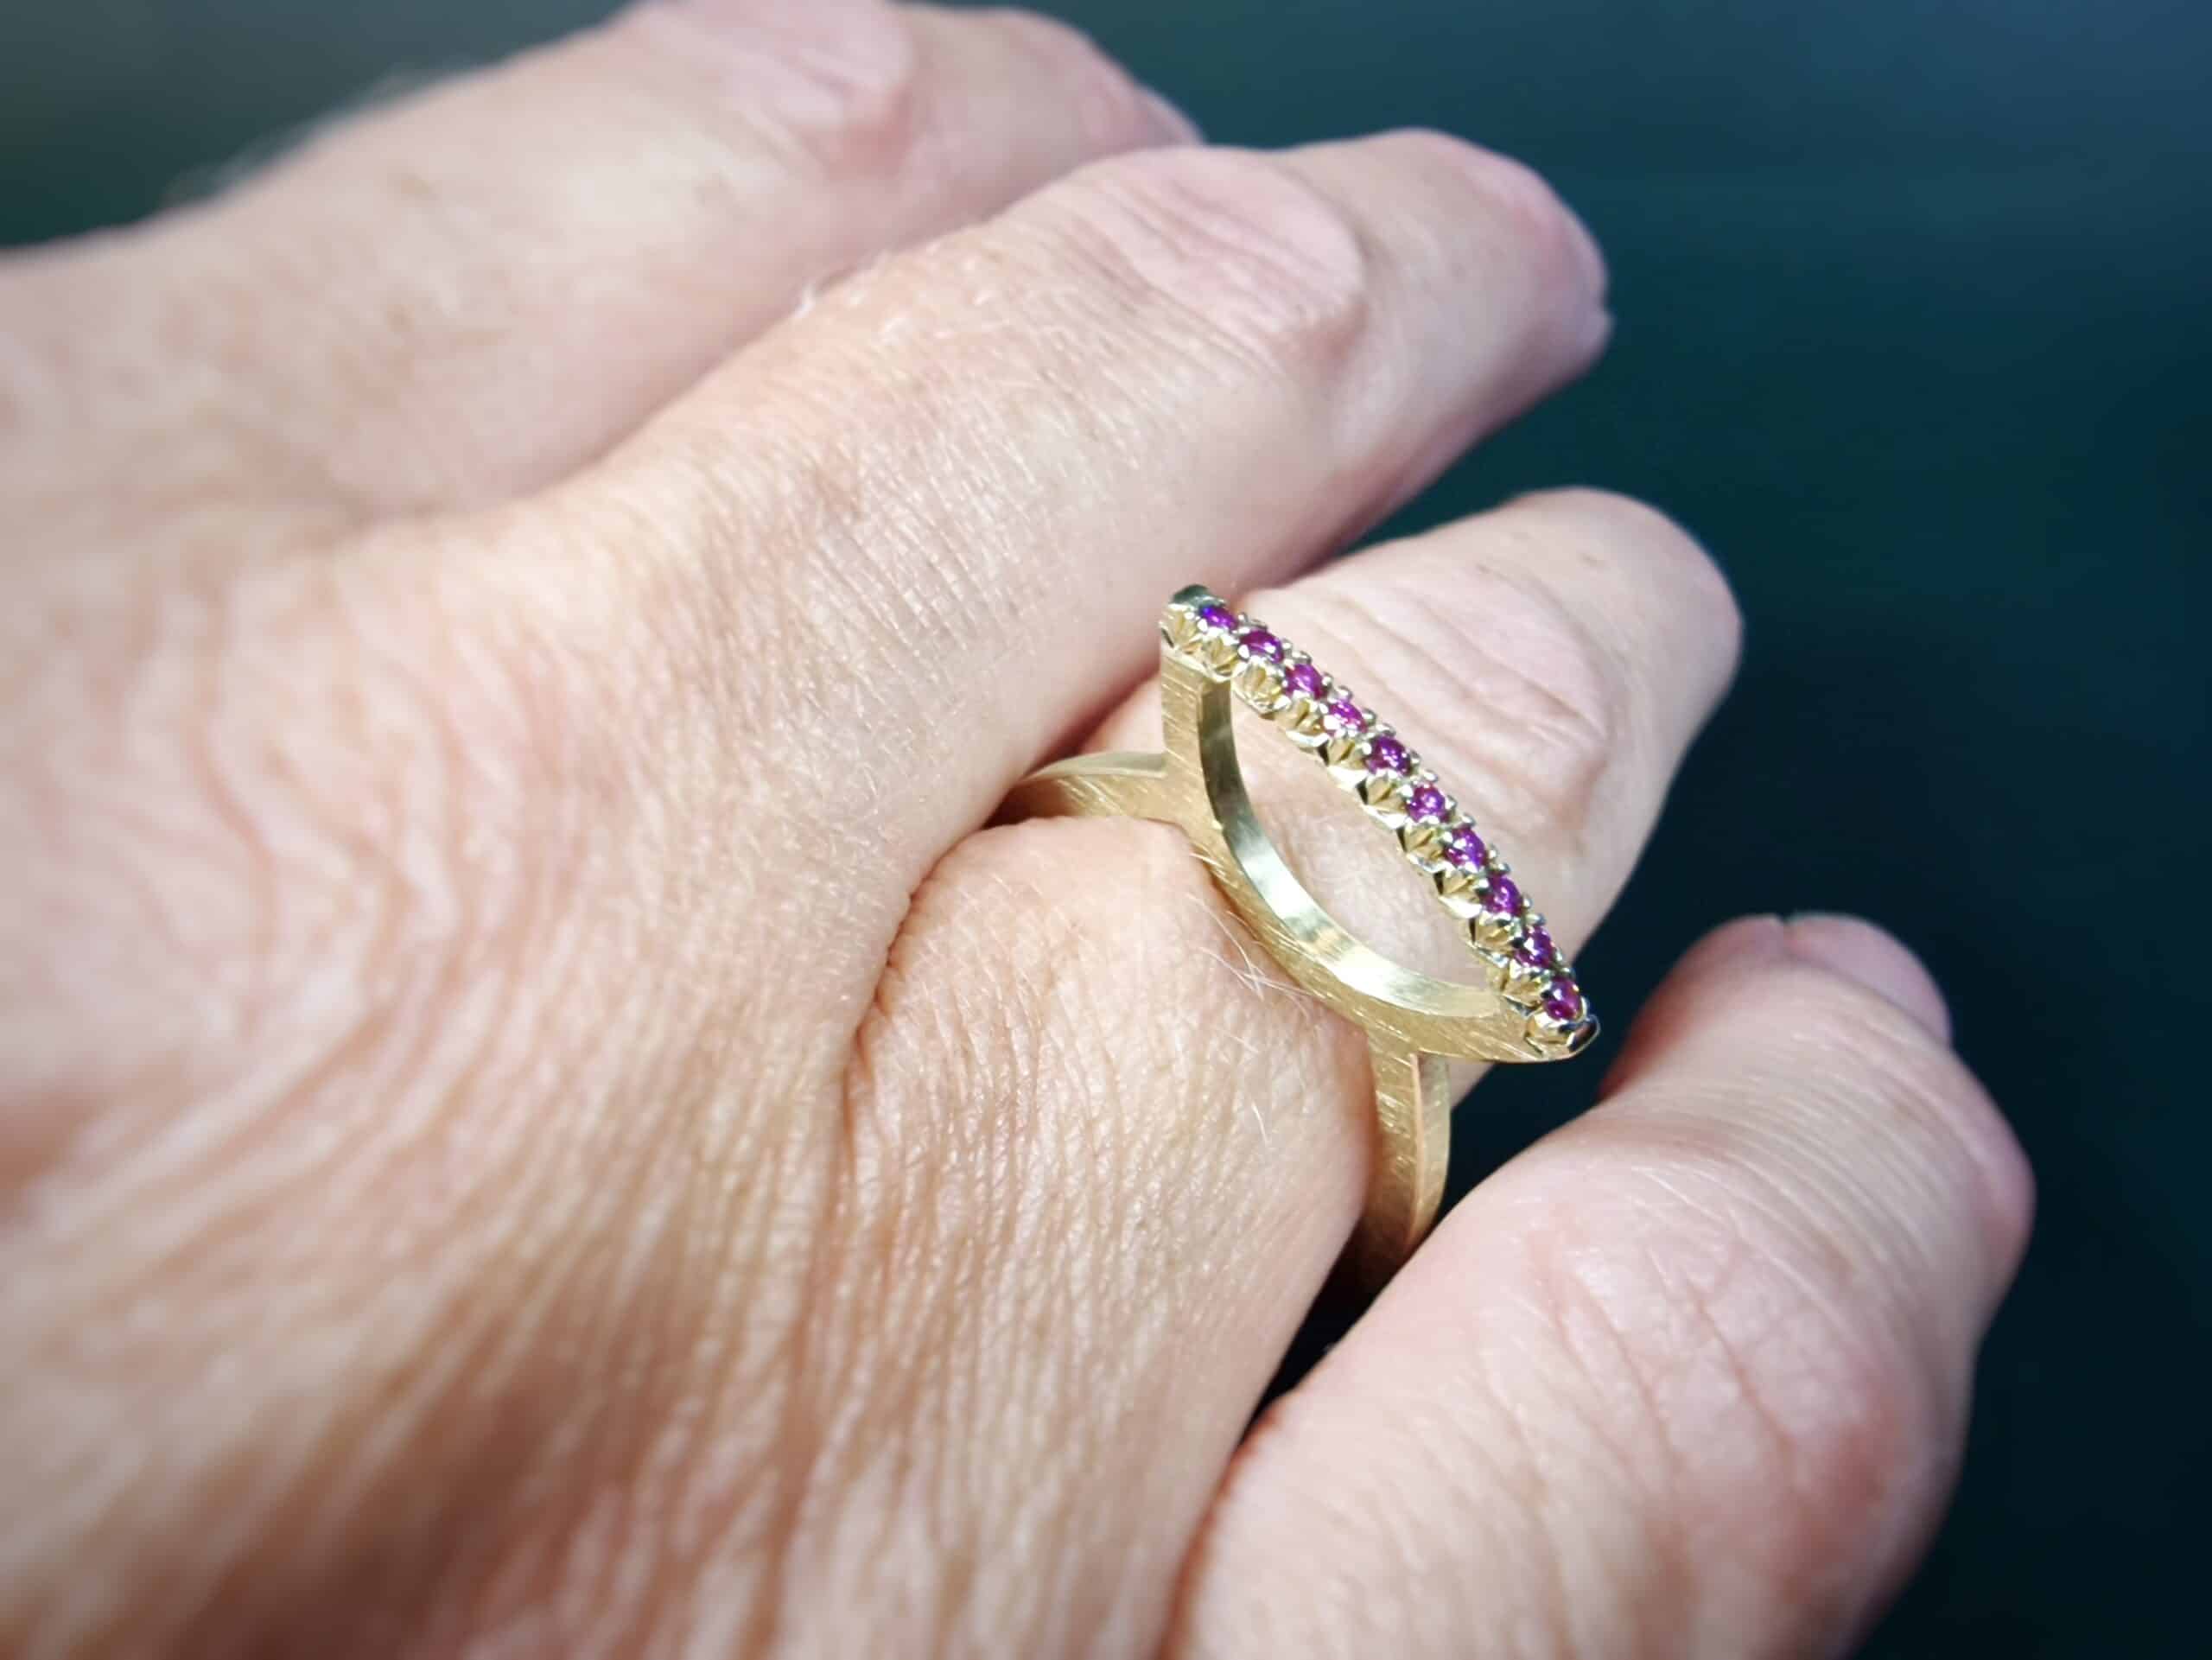 Geelgouden ring Distel met fancy purple diamant. Statement ring van Oogst Sieraden in Amsterdam. Om de vinger.